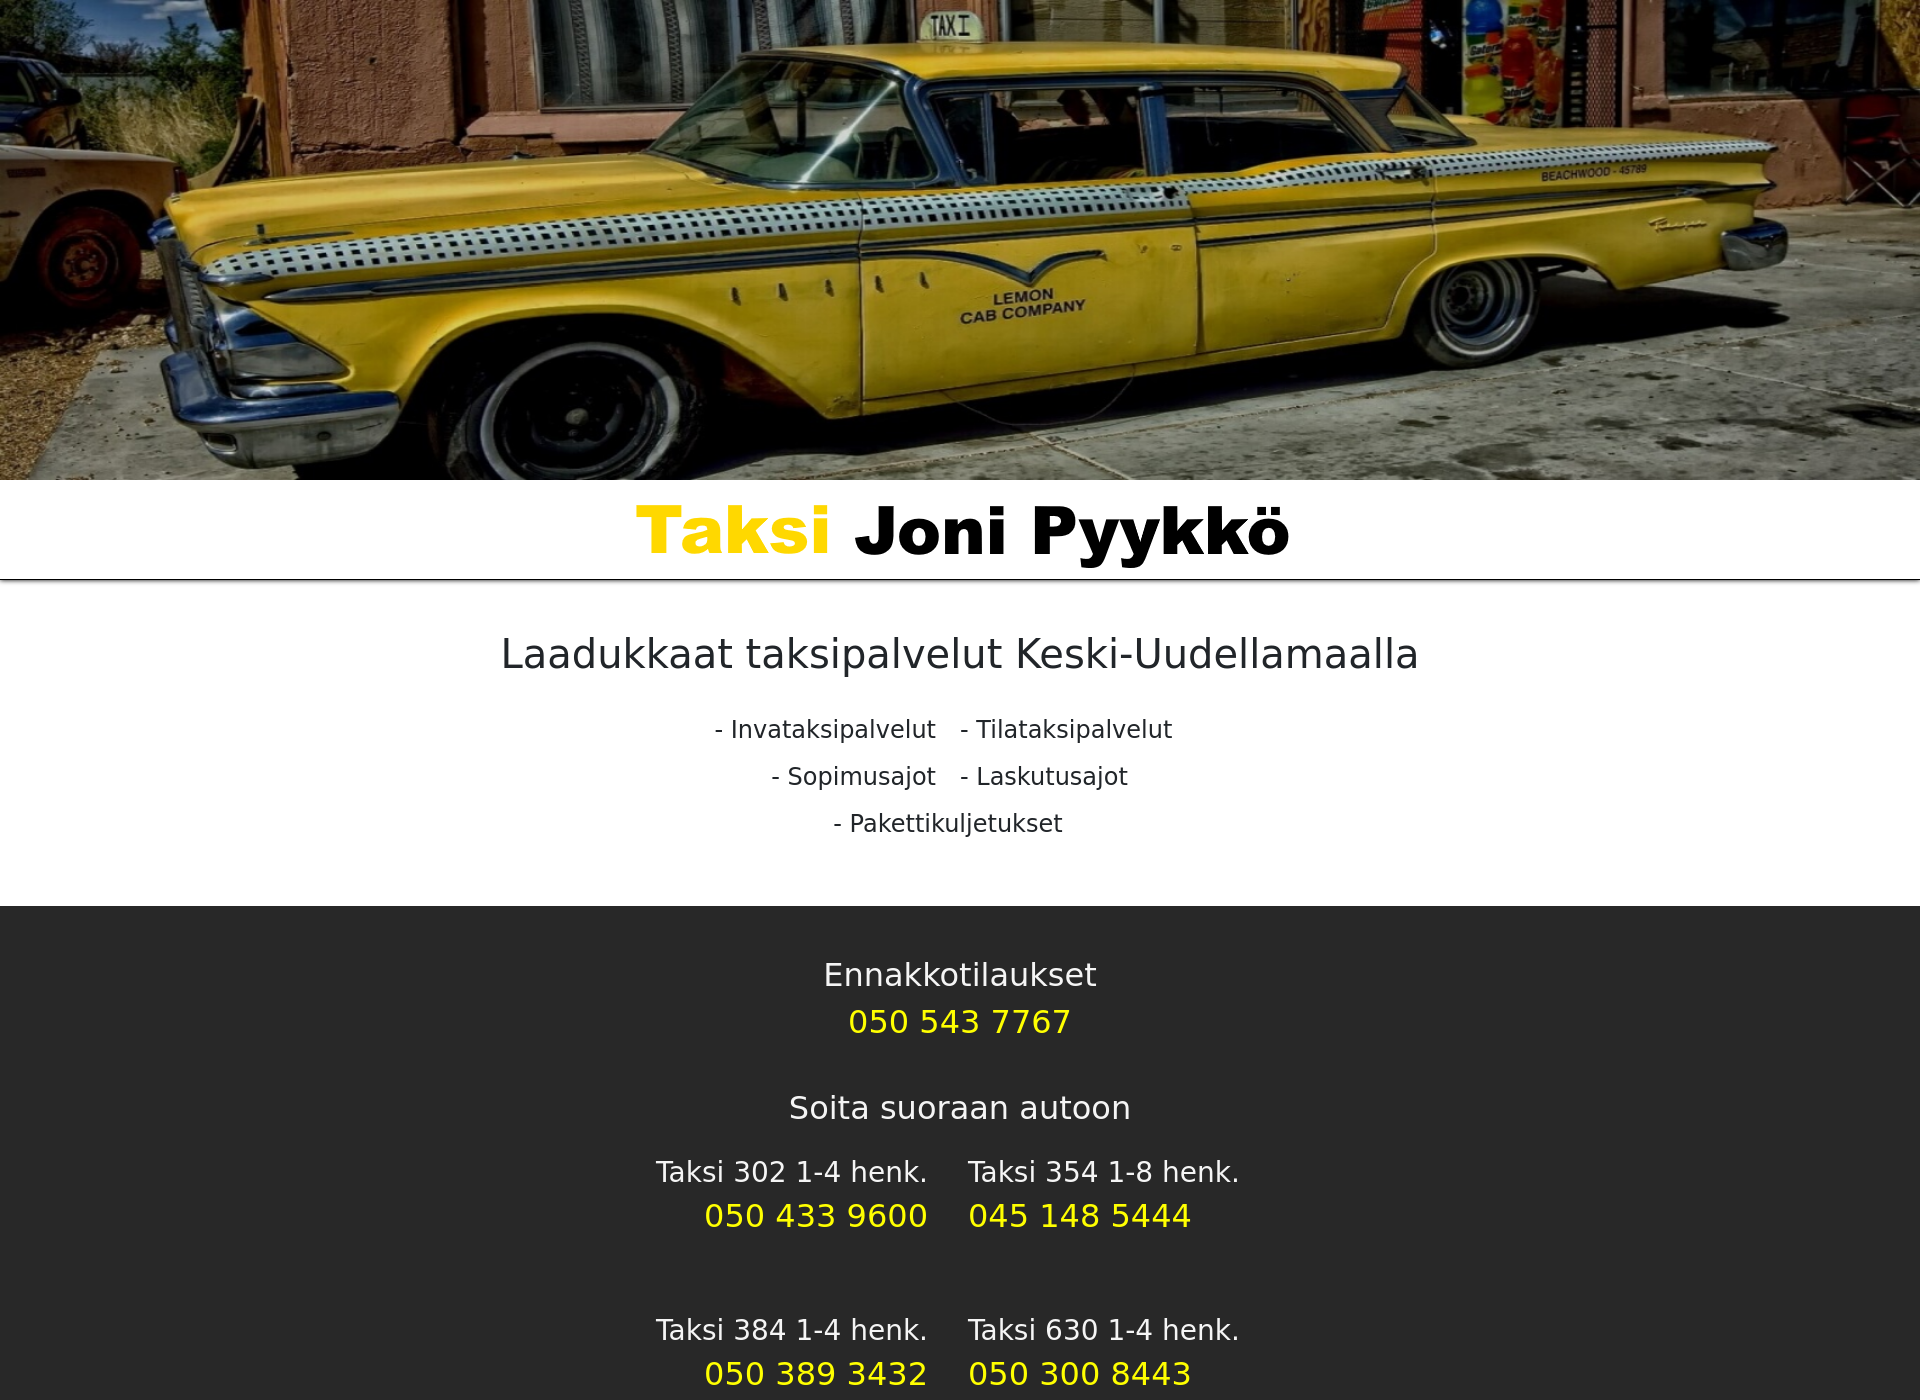 Näyttökuva taksijonipyykko.fi